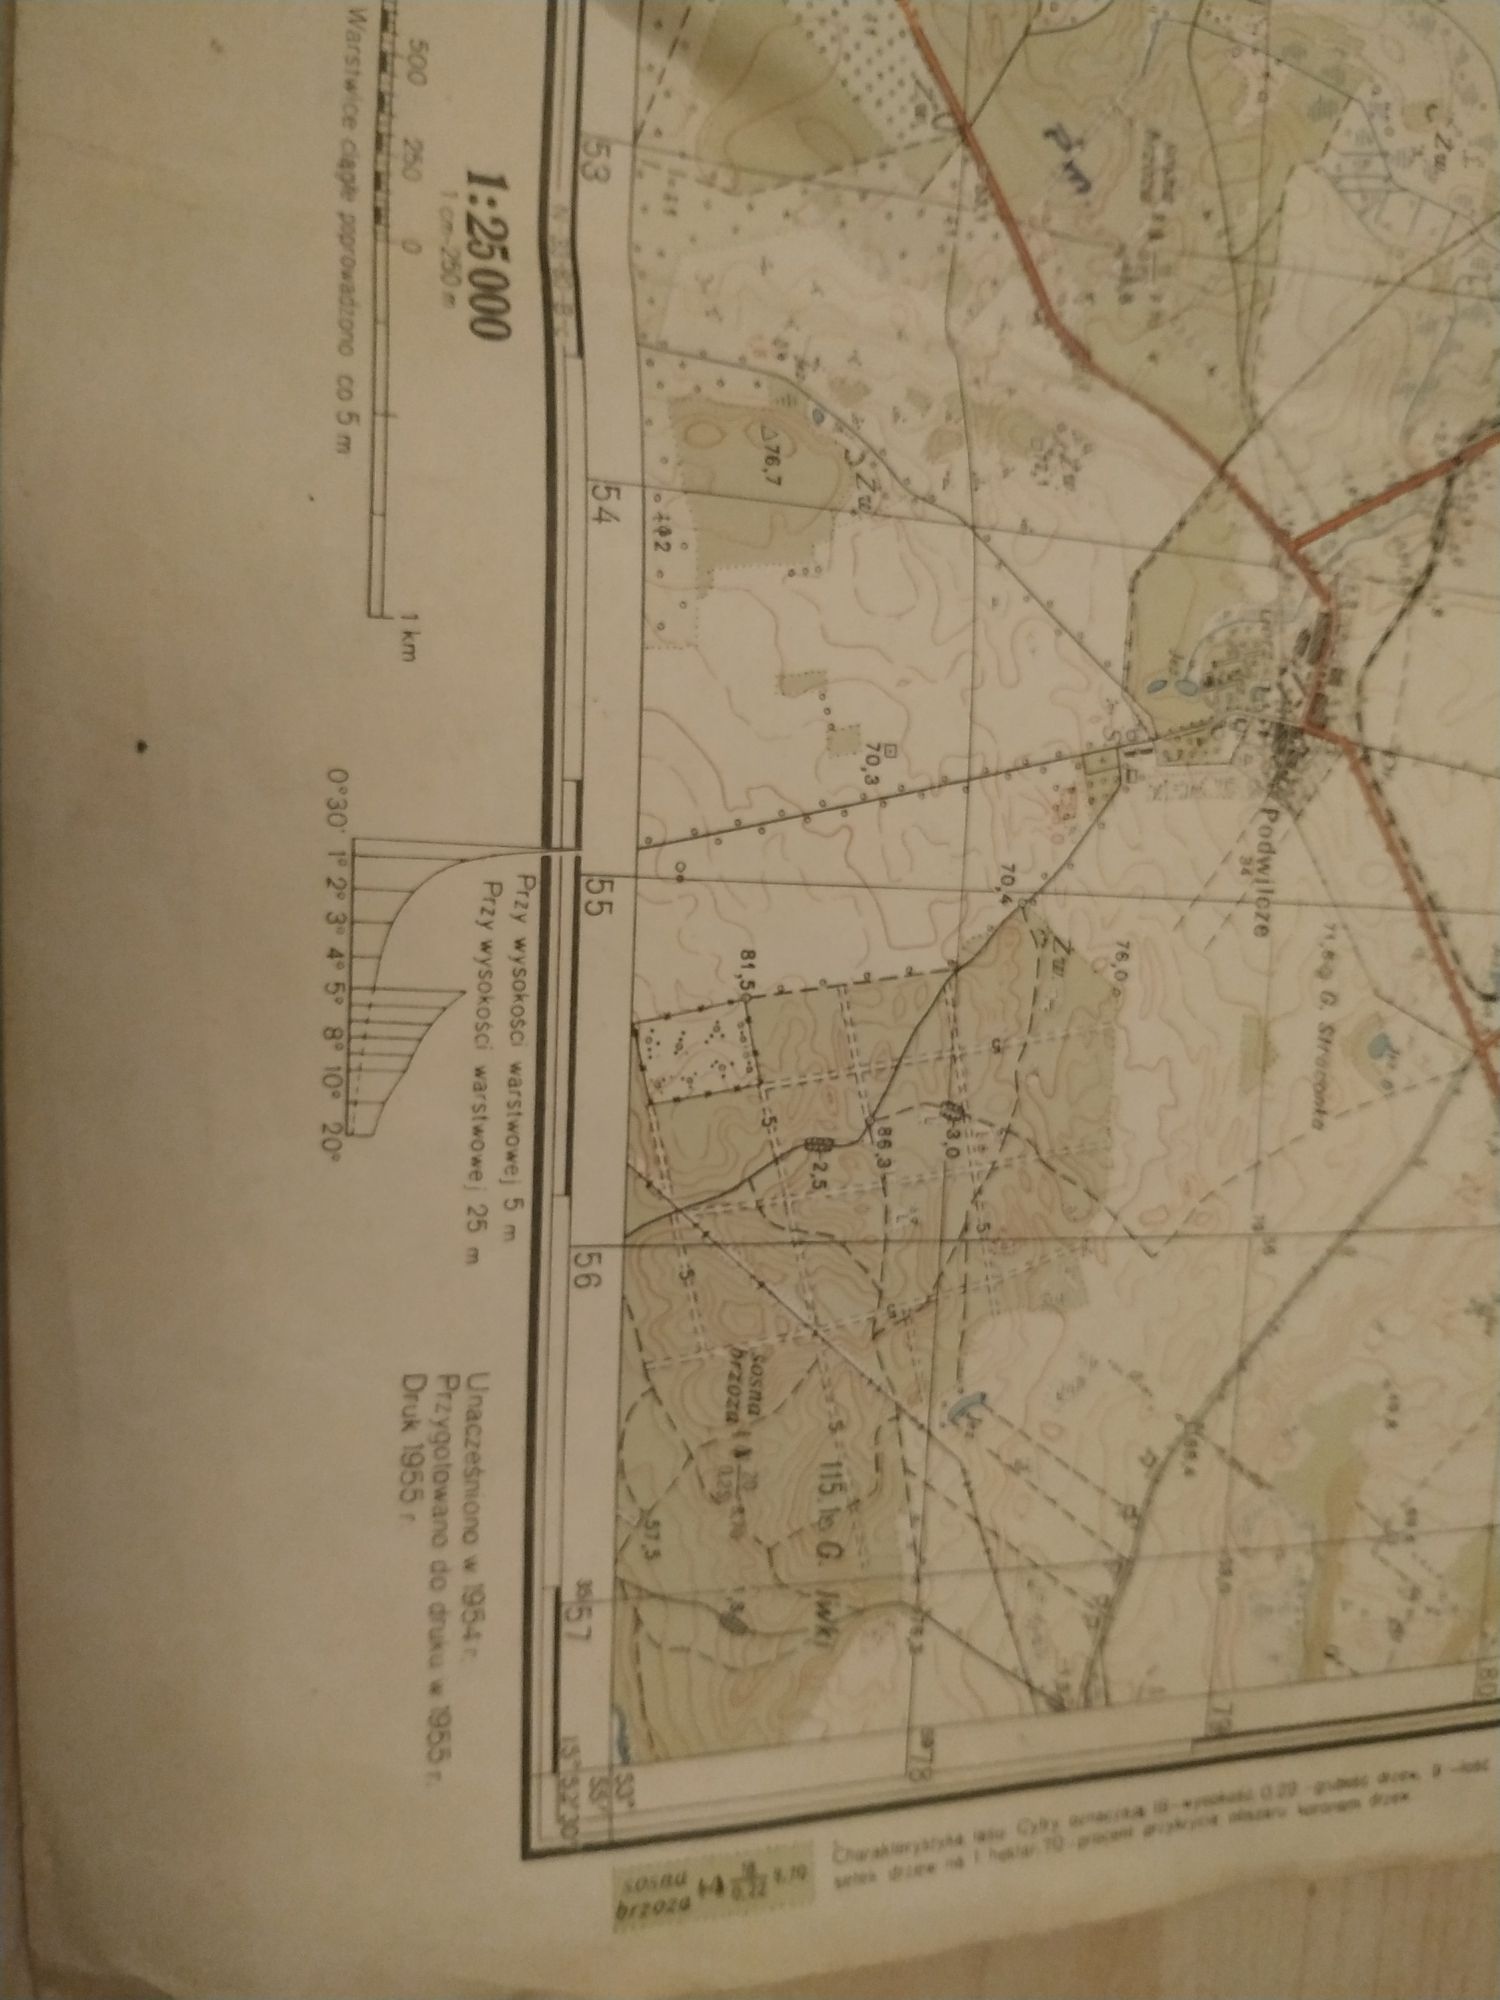 Tajna mapa sztabu generalnego N-33-68-D-c woj. koszalińskie 1955r.